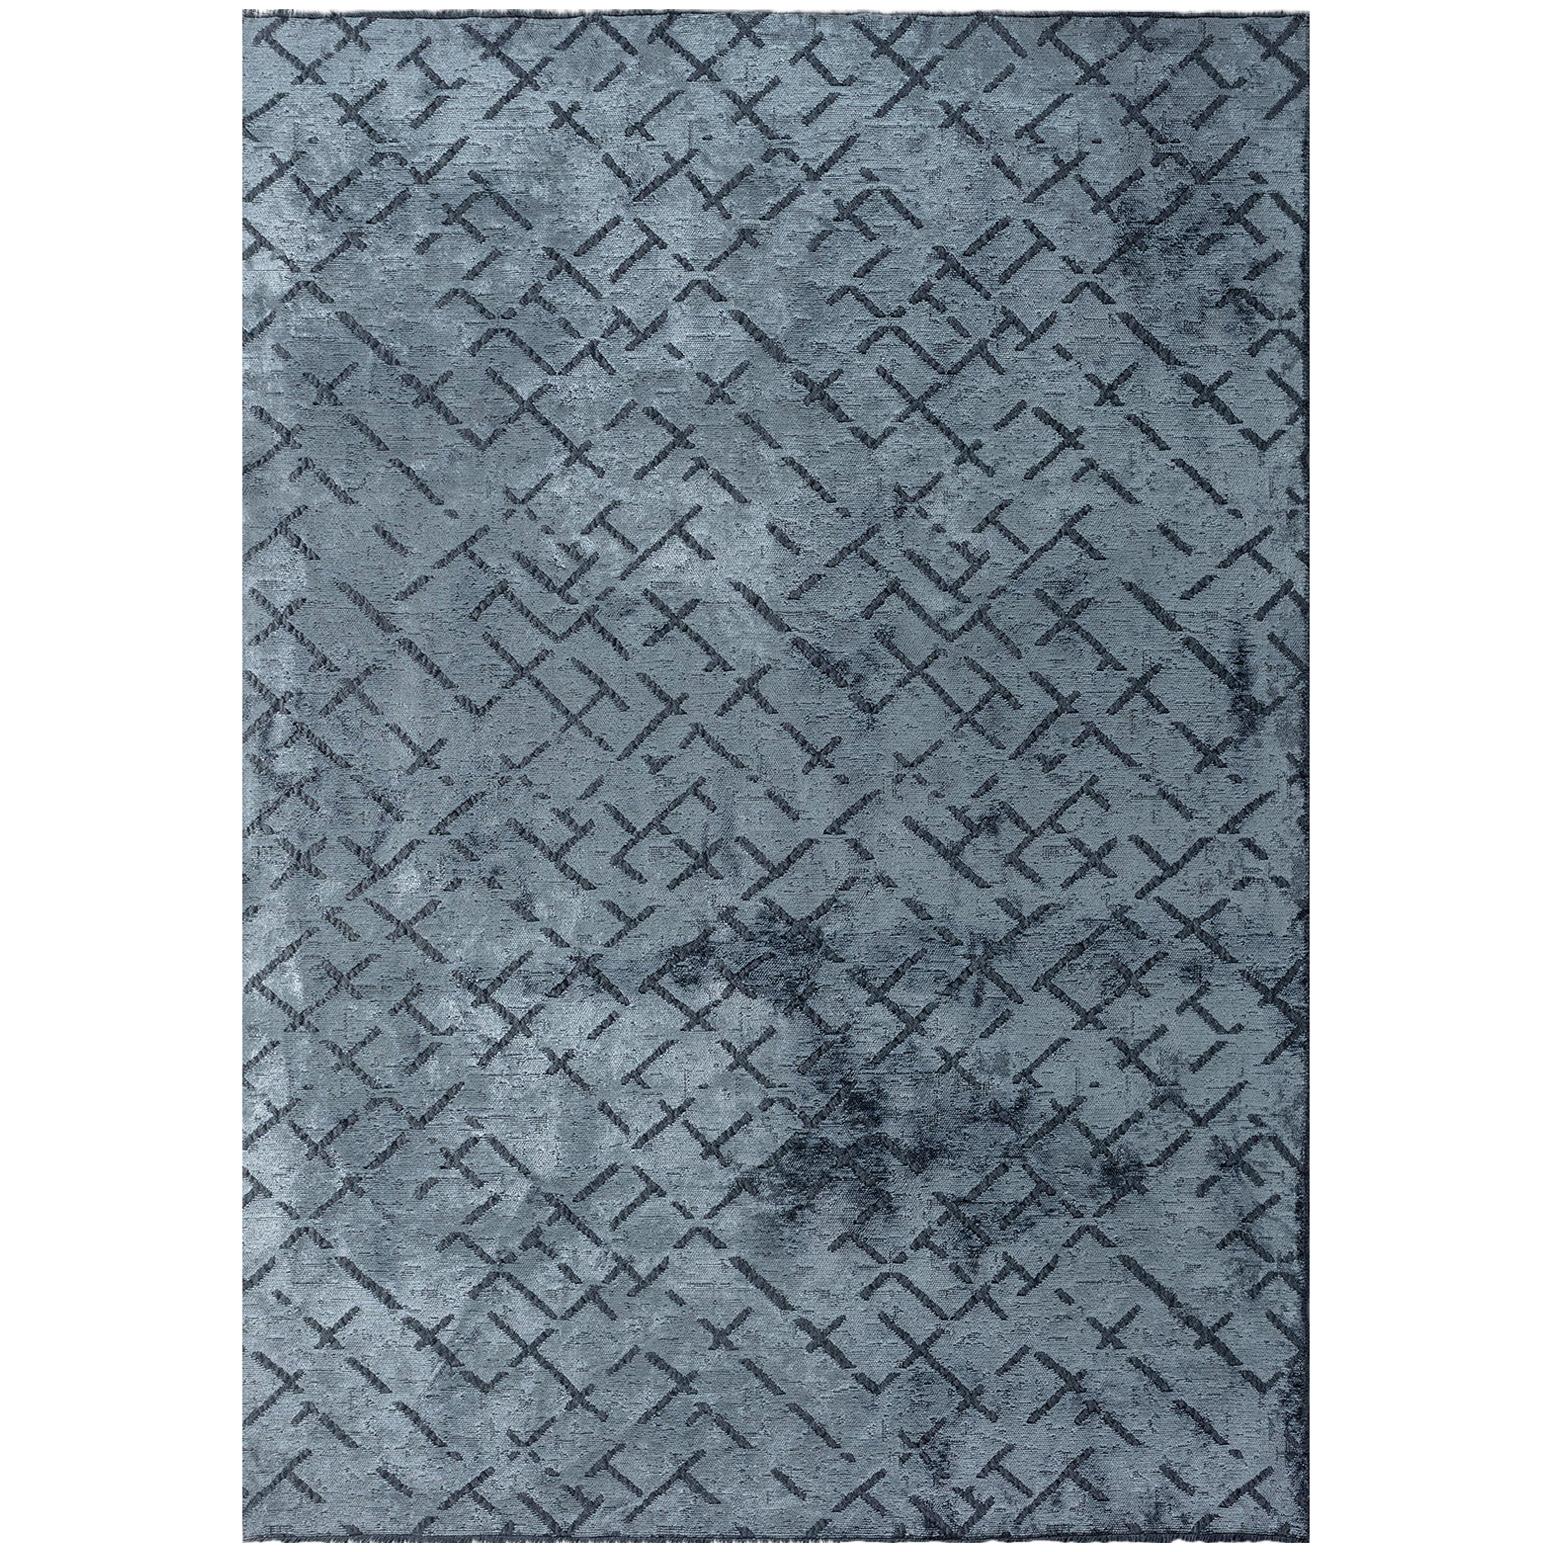 Tapis moderniste bleu clair à motif répétitif abstrait avec ou sans frange